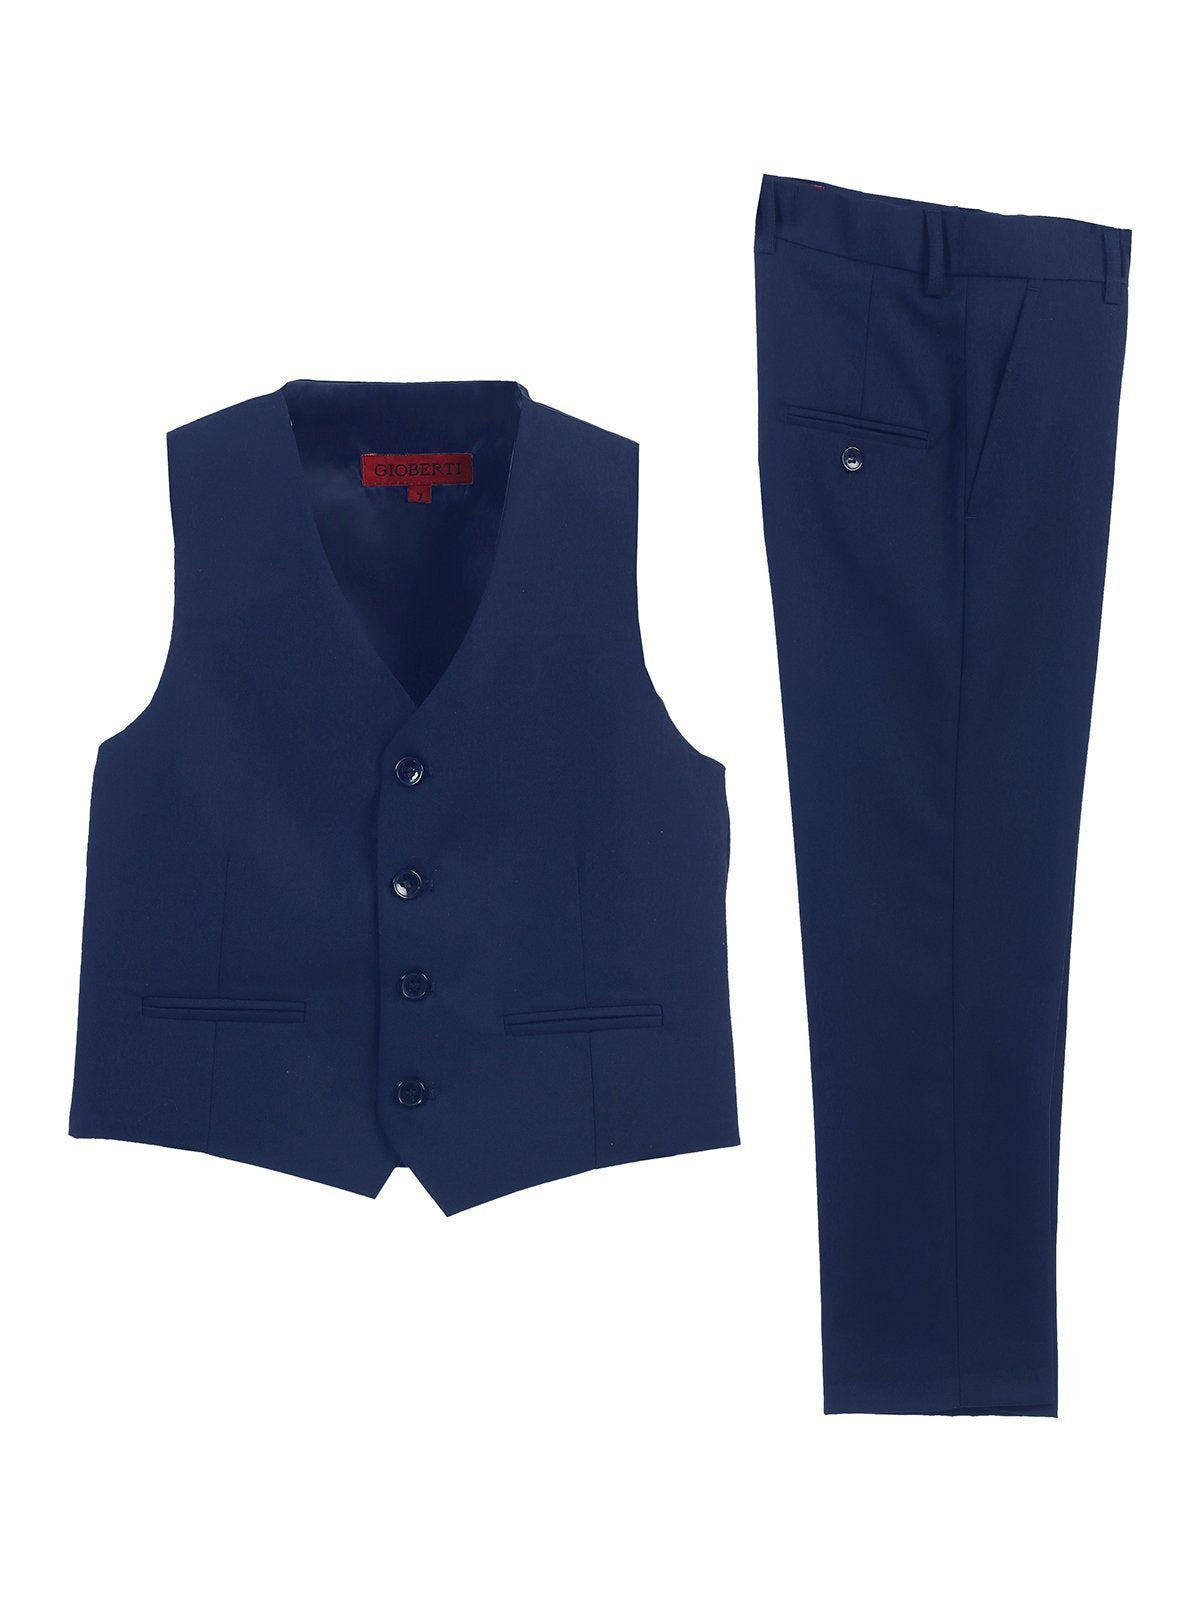 Boy's Formal 2 -Piece Suit Vest GB-BVS